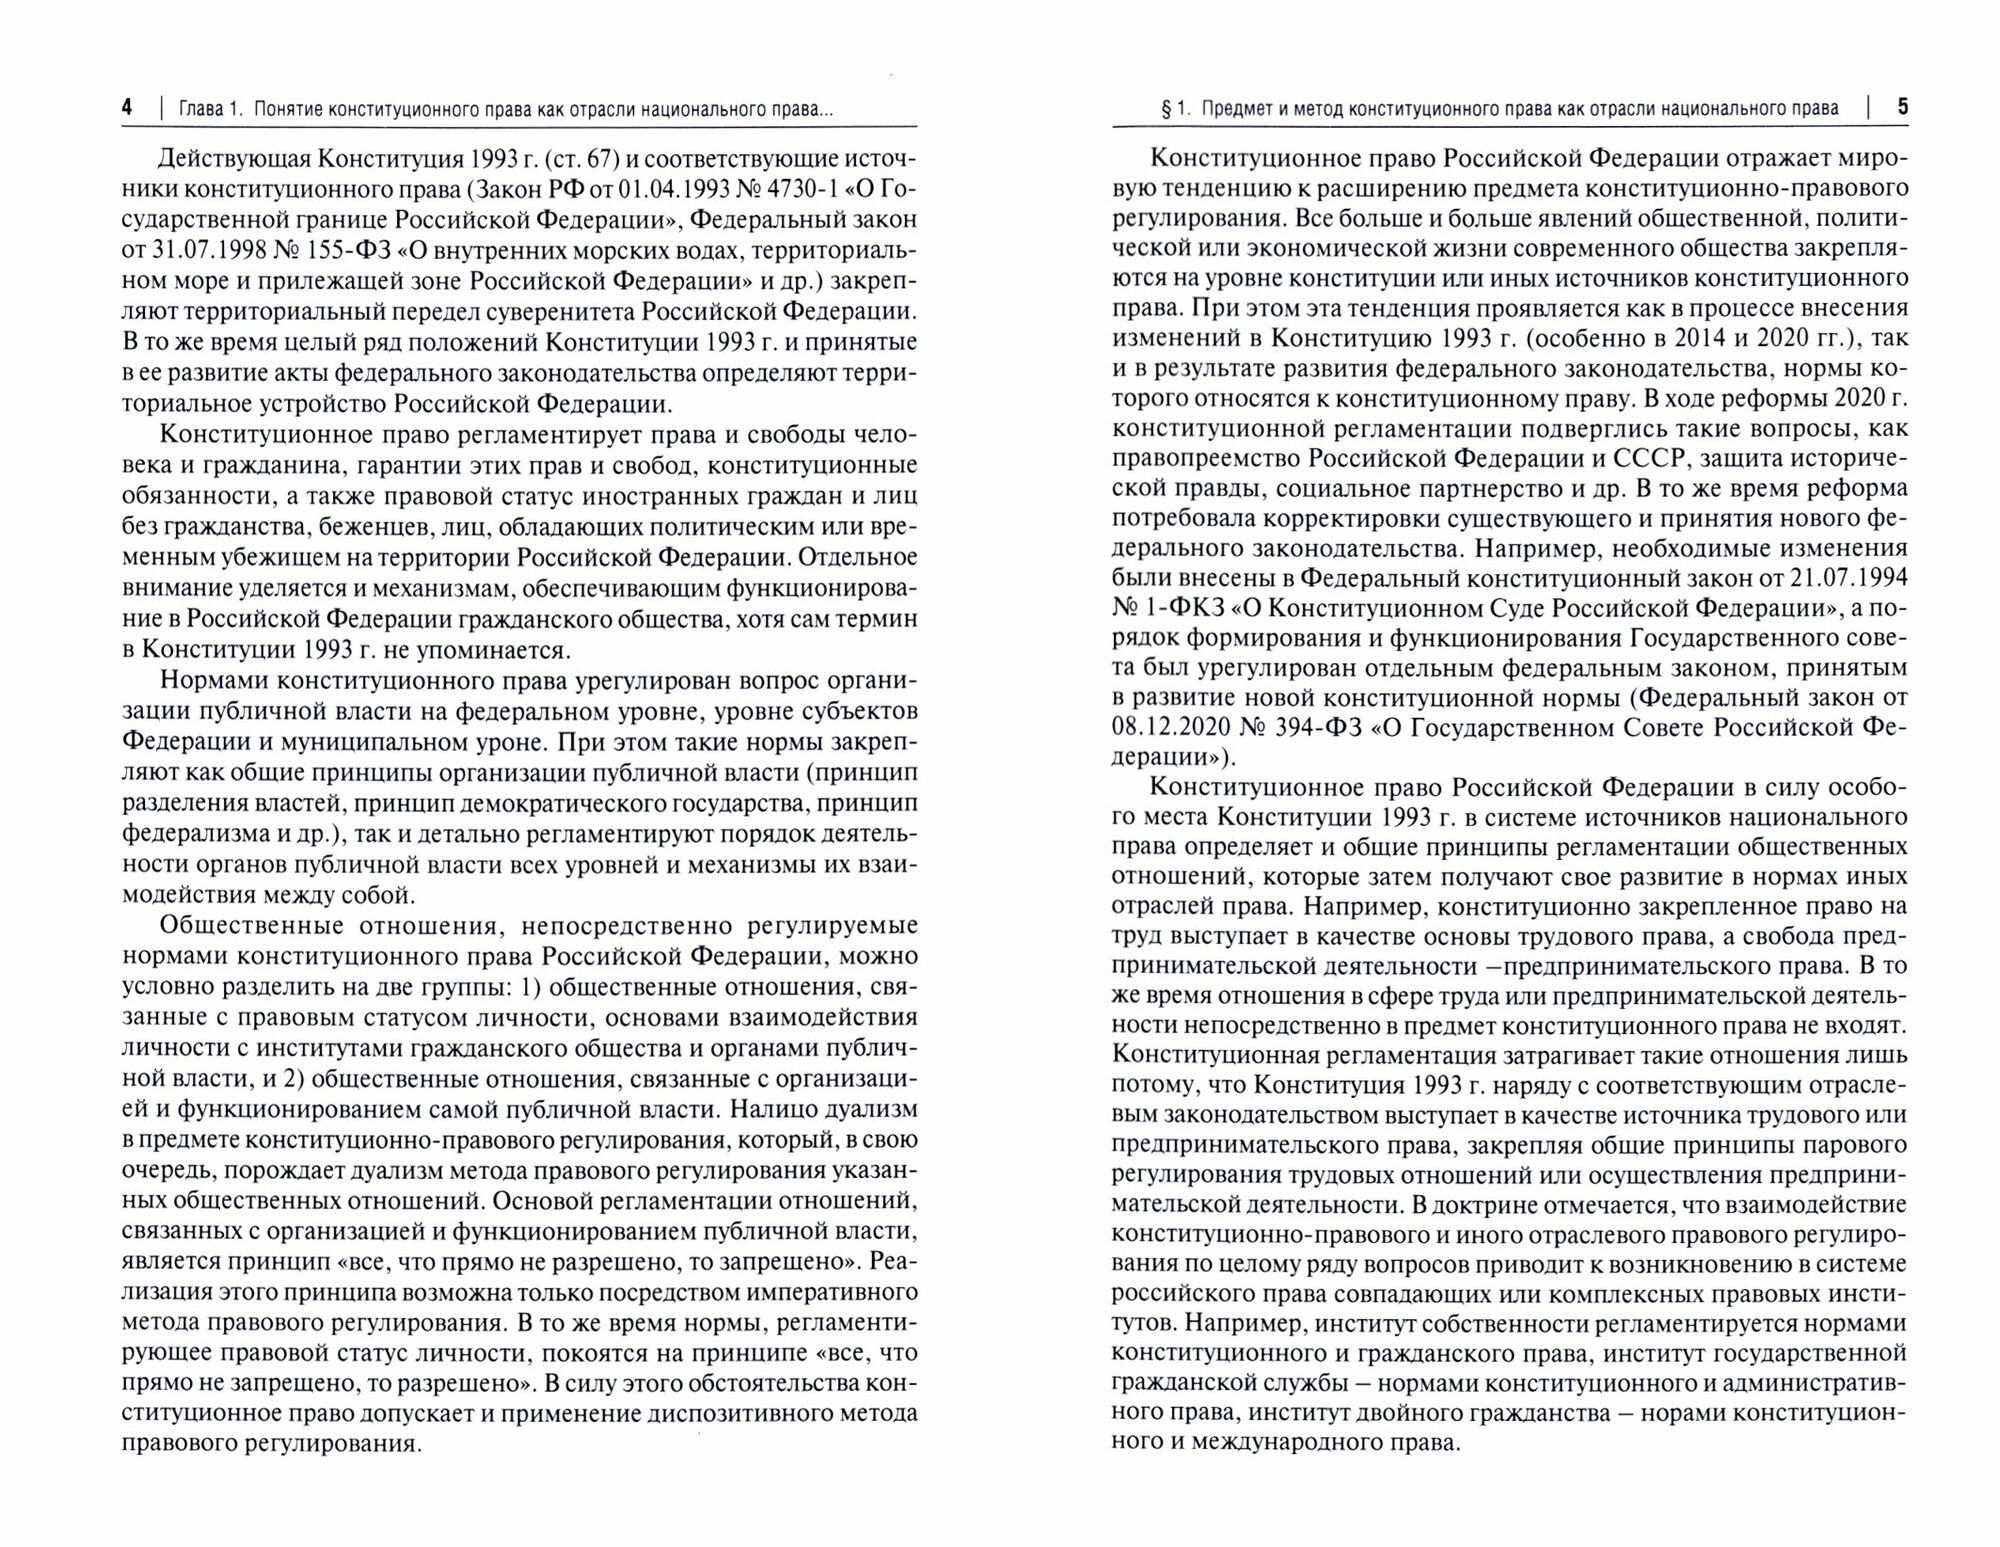 Конституционное право Российской Федерации. Учебное пособие - фото №2